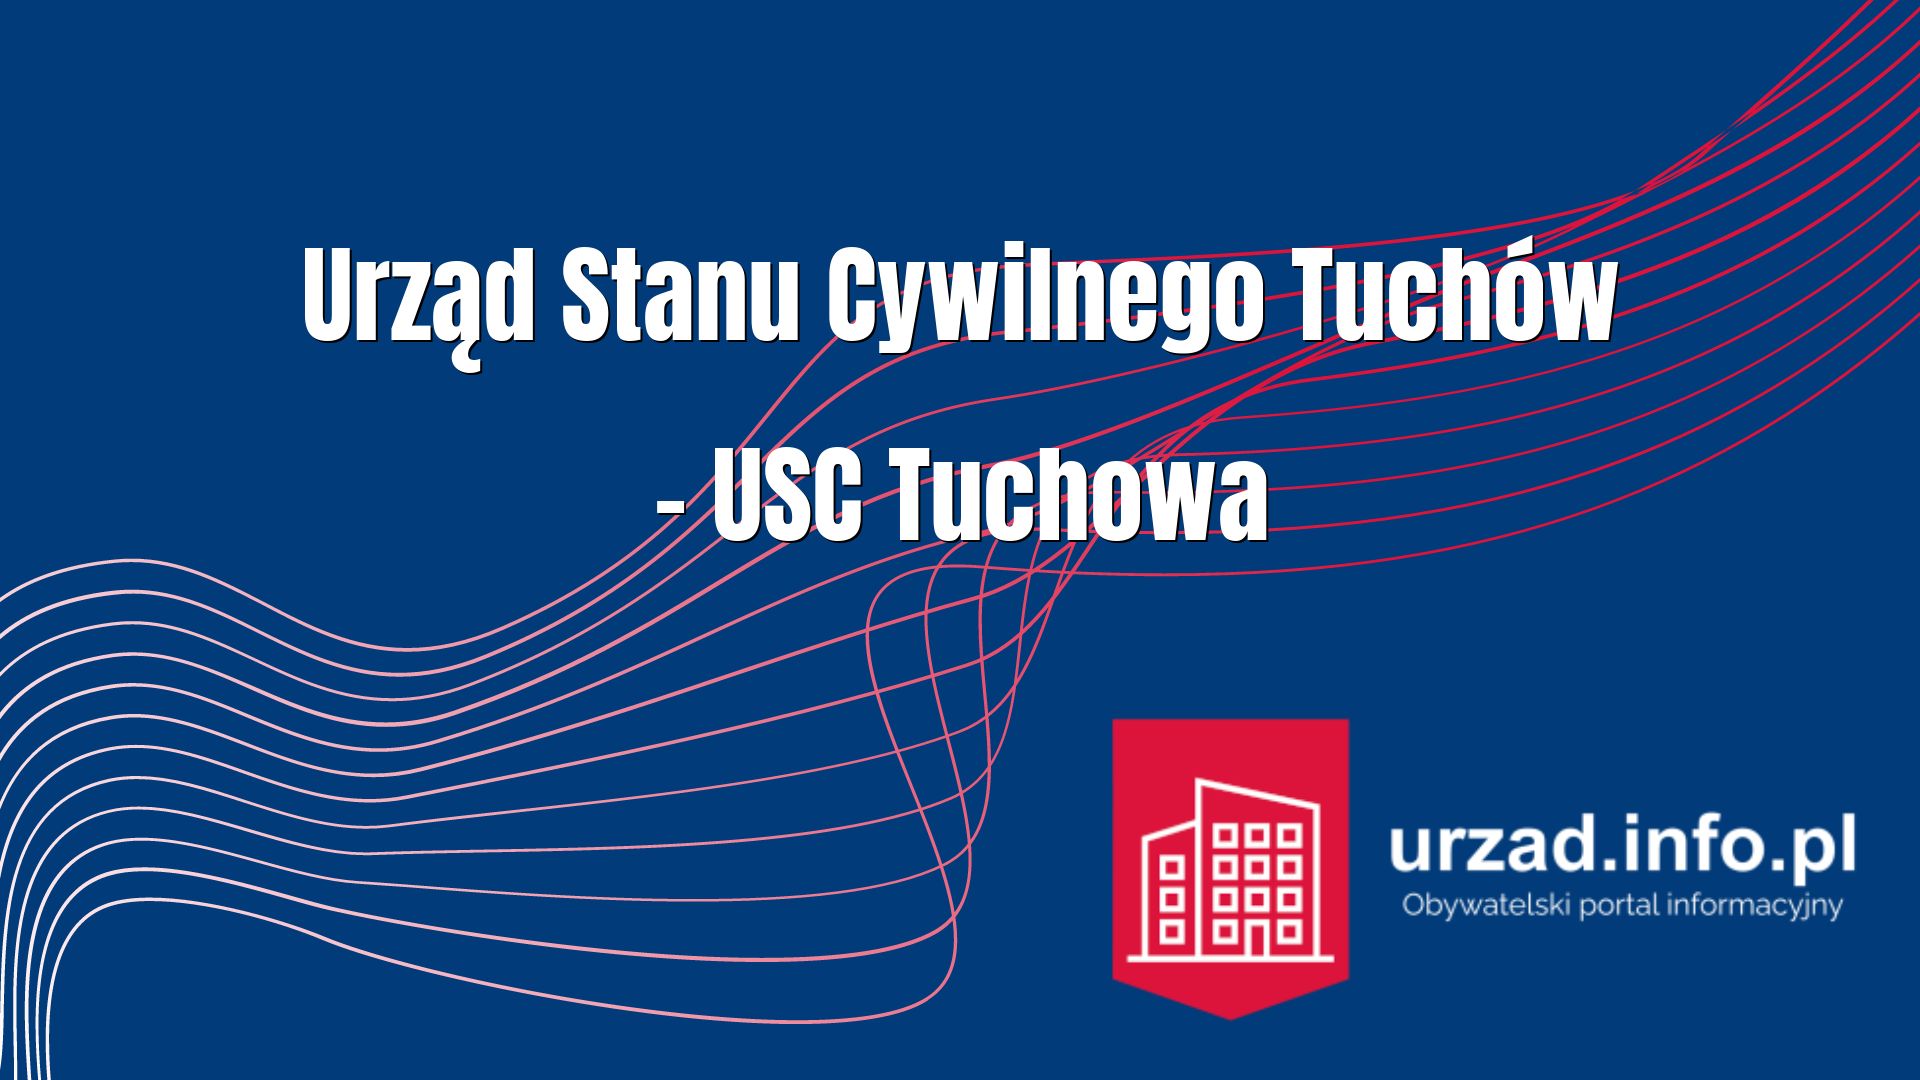 Urząd Stanu Cywilnego Tuchów – USC Tuchowa